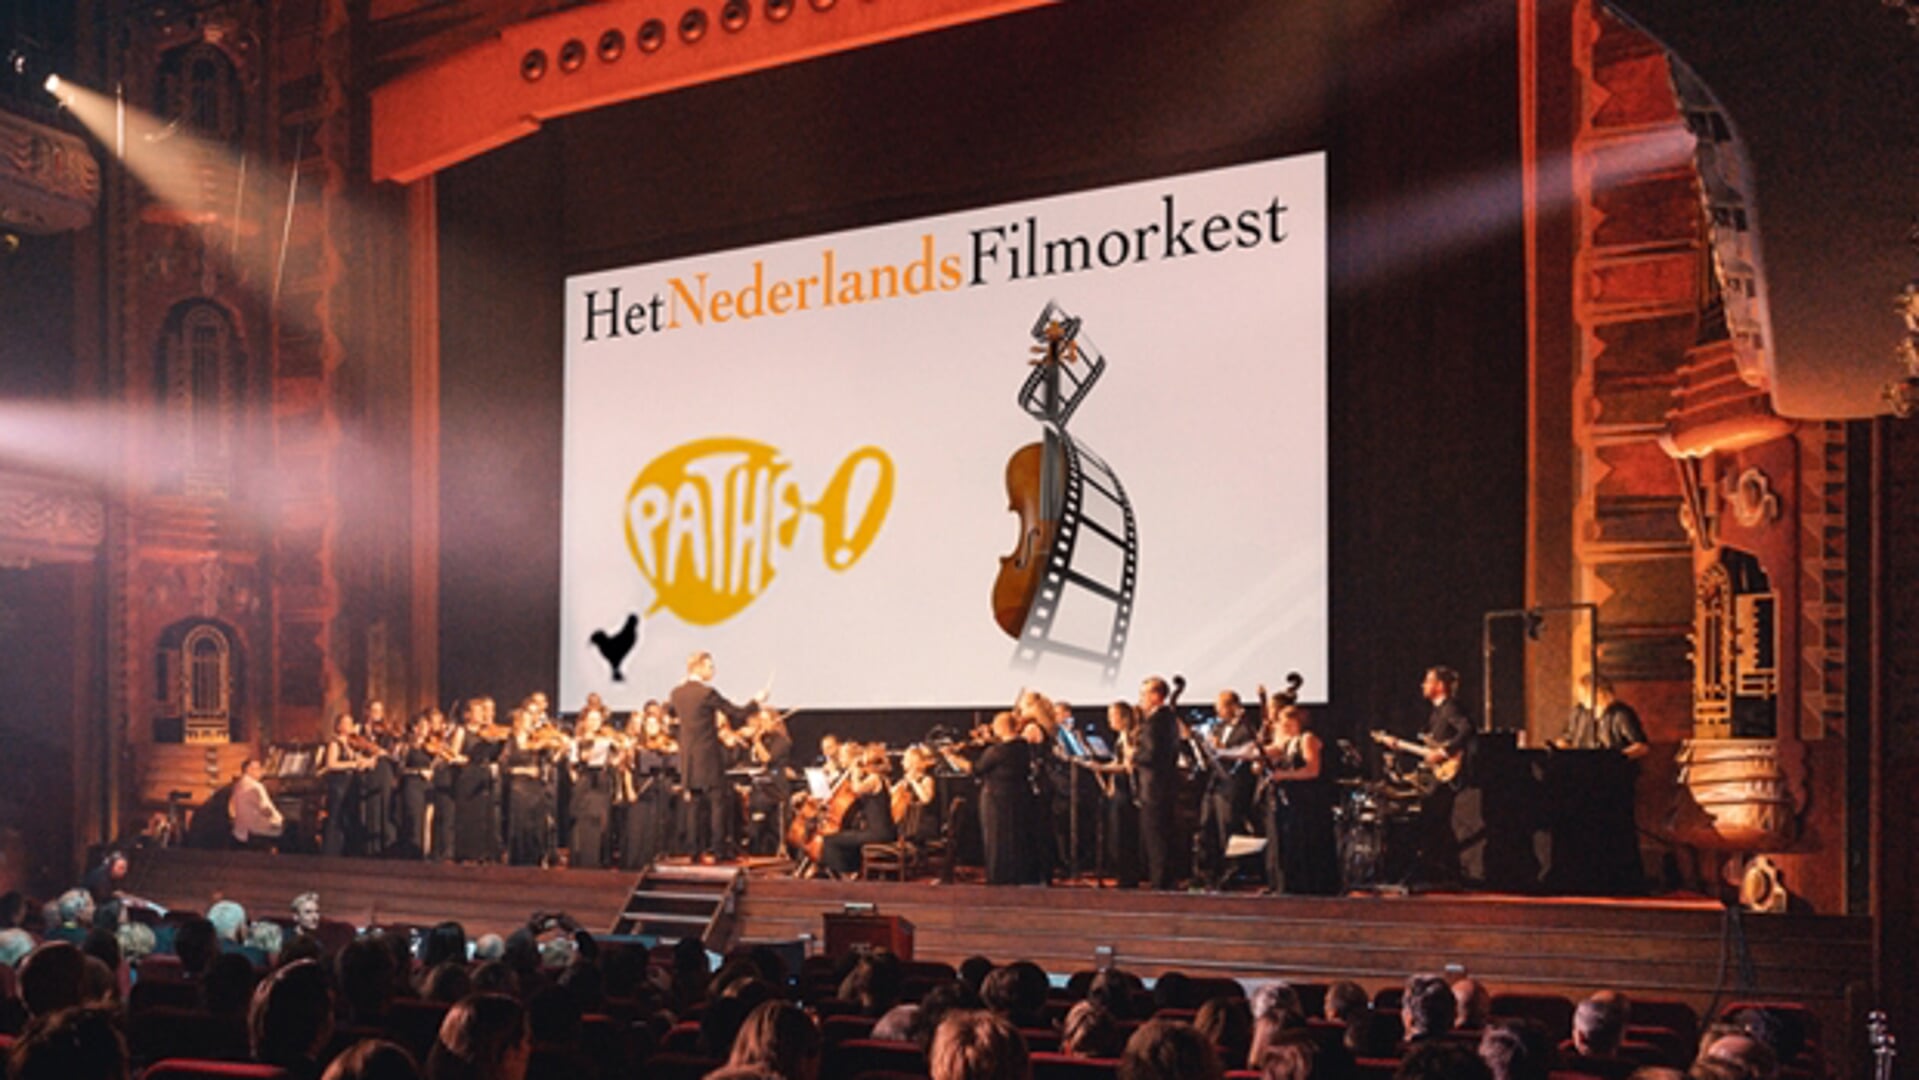 Het Nederlands Filmorkest.